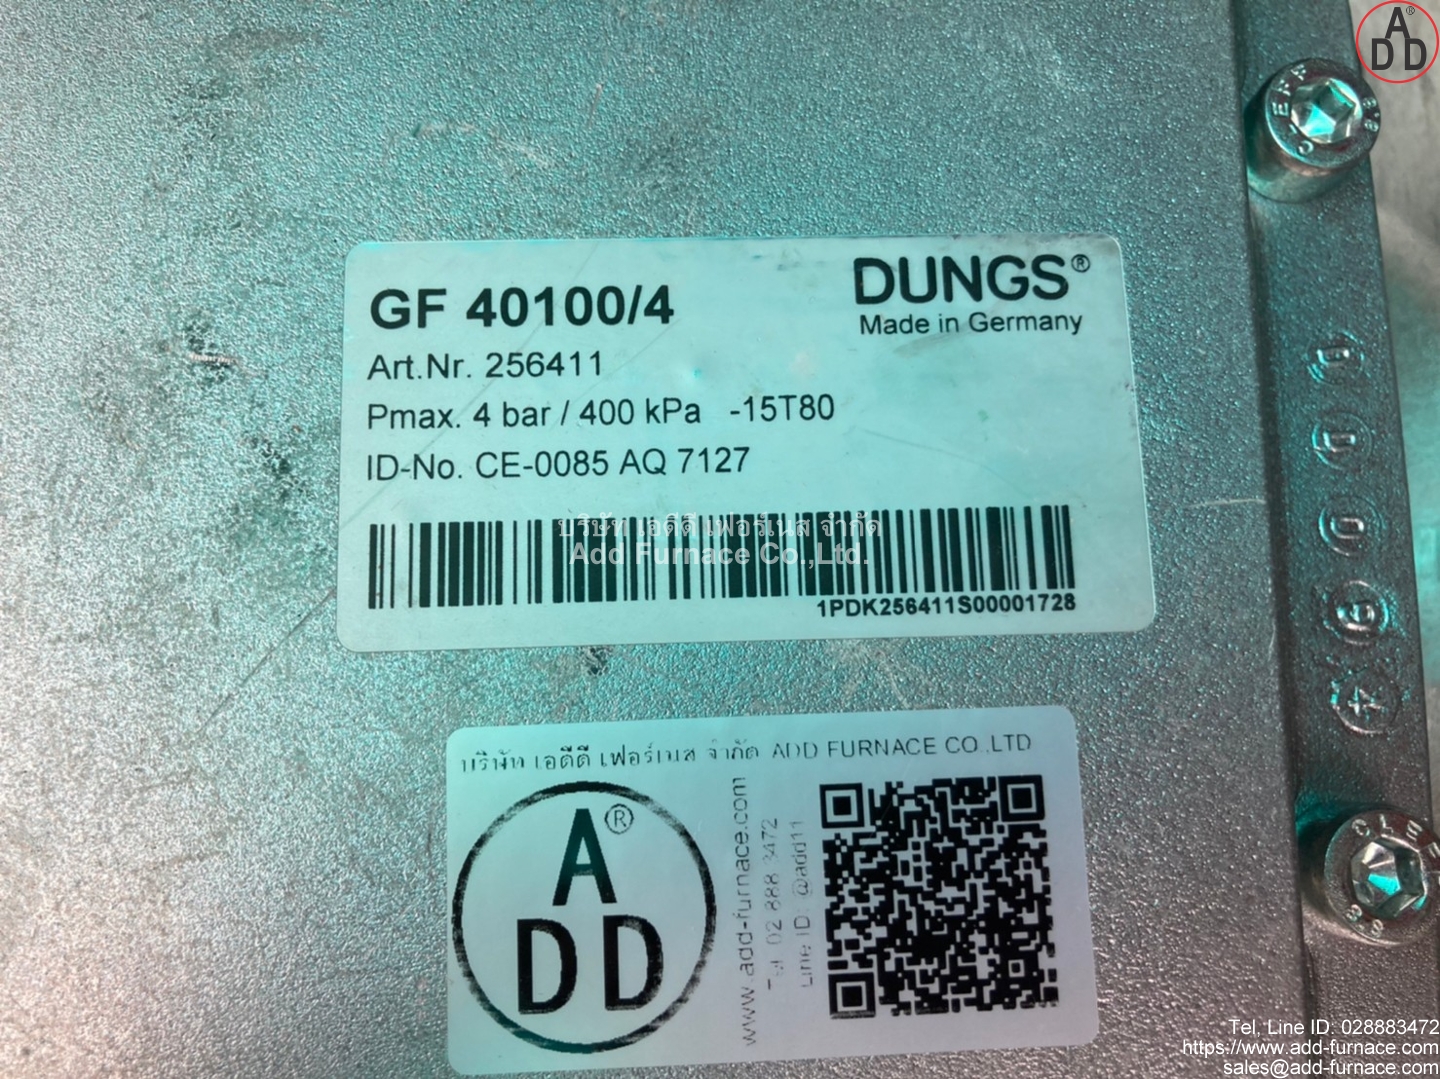 GF 40100/4 Dungs (11)